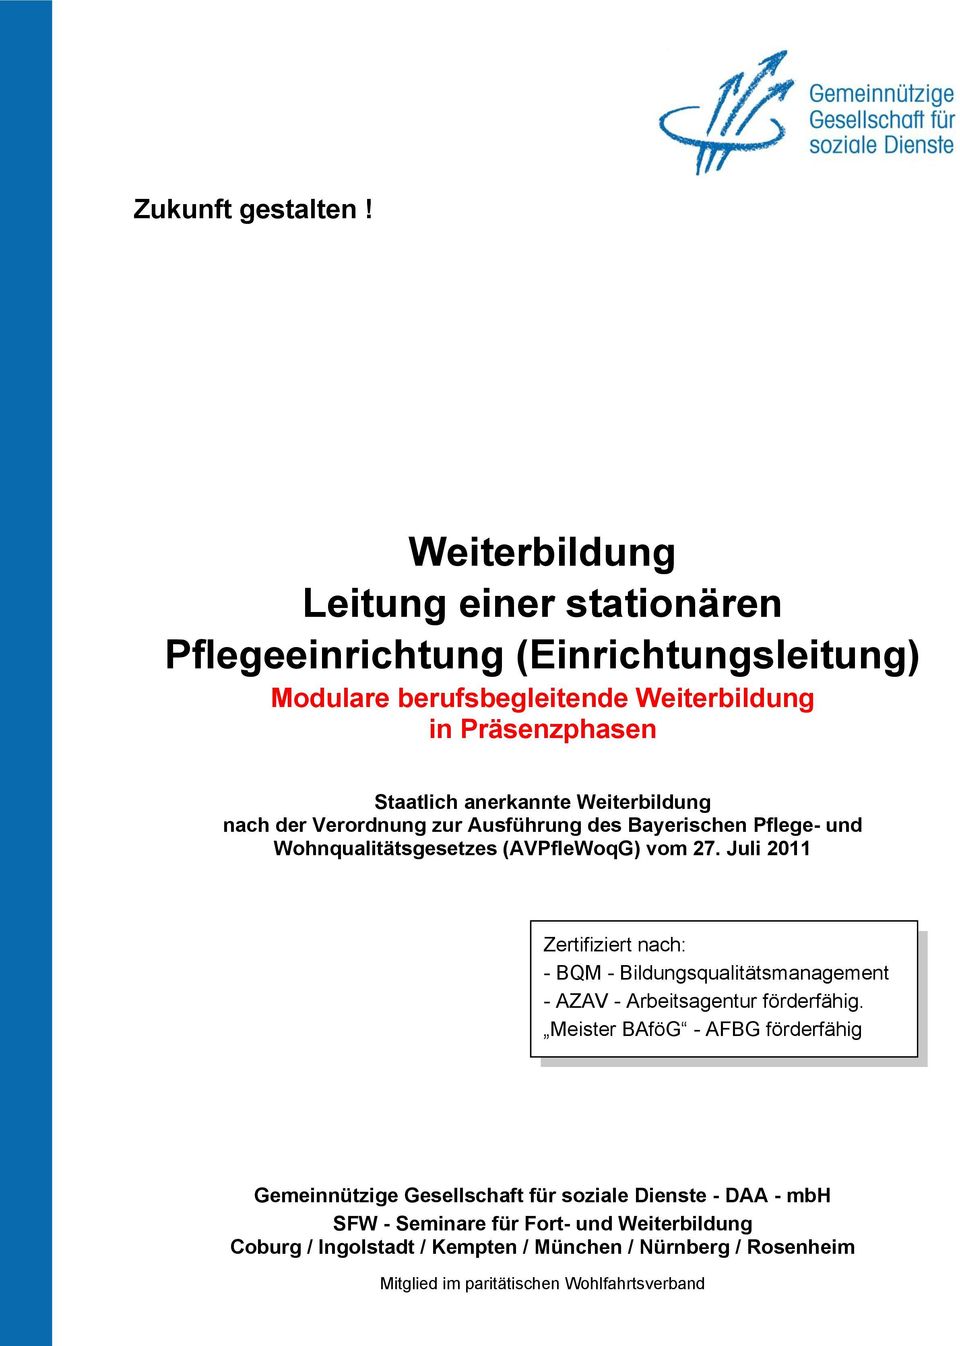 Weiterbildung nach der Verordnung zur Ausführung des Bayerischen Pflege- und Wohnqualitätsgesetzes (AVPfleWoqG) vom 27.